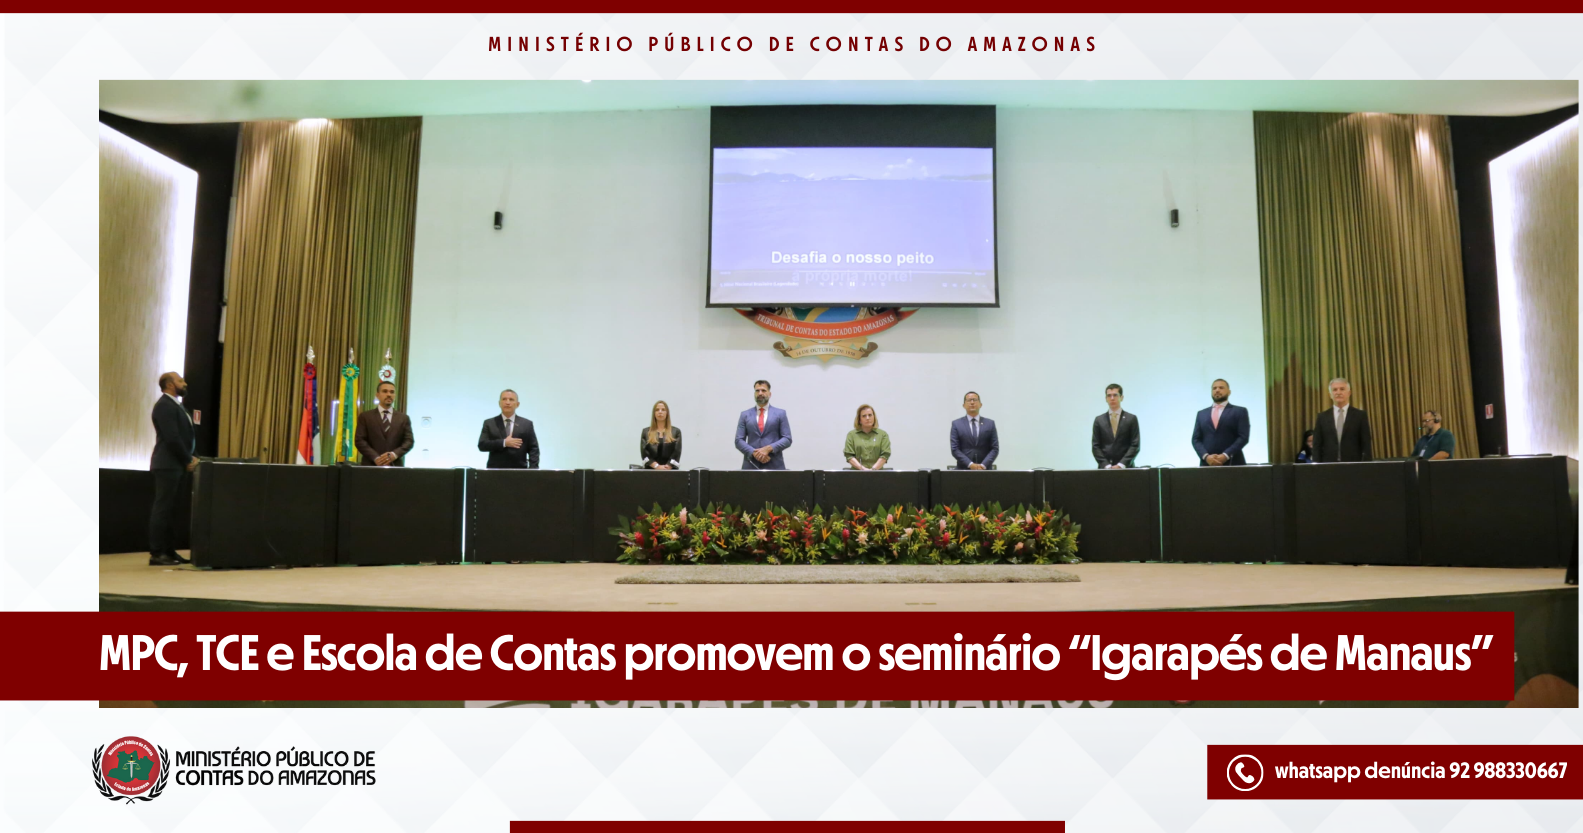 MPC, TCE e Escola de Contas promovem o seminário “Igarapés de Manaus”